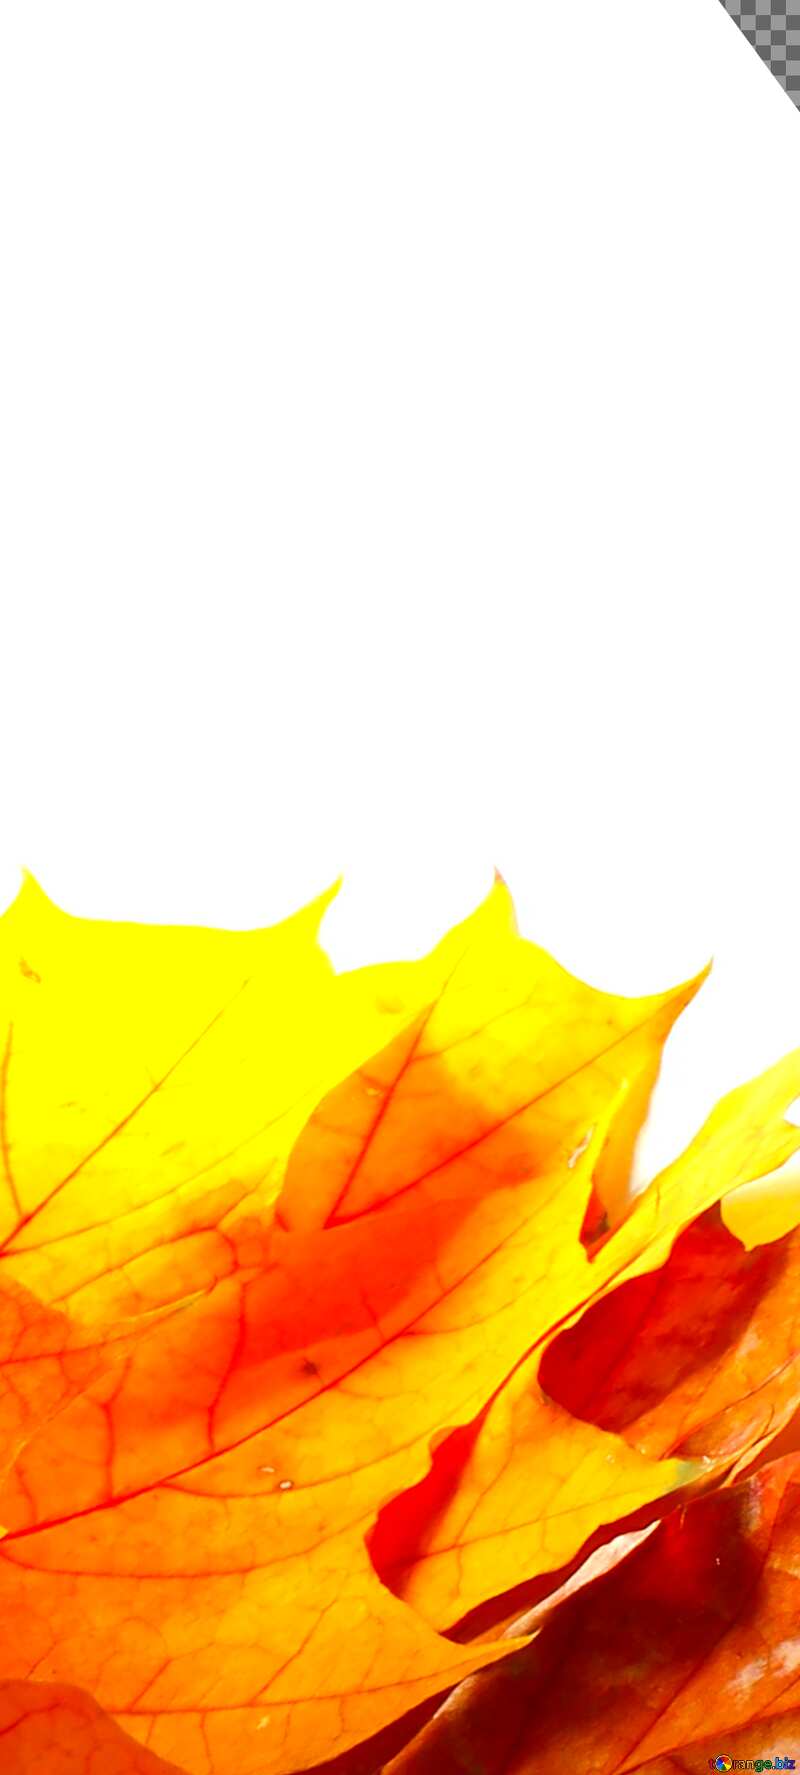 Картинка на аватарку. Осенние желтые  листья изолированно. №35247